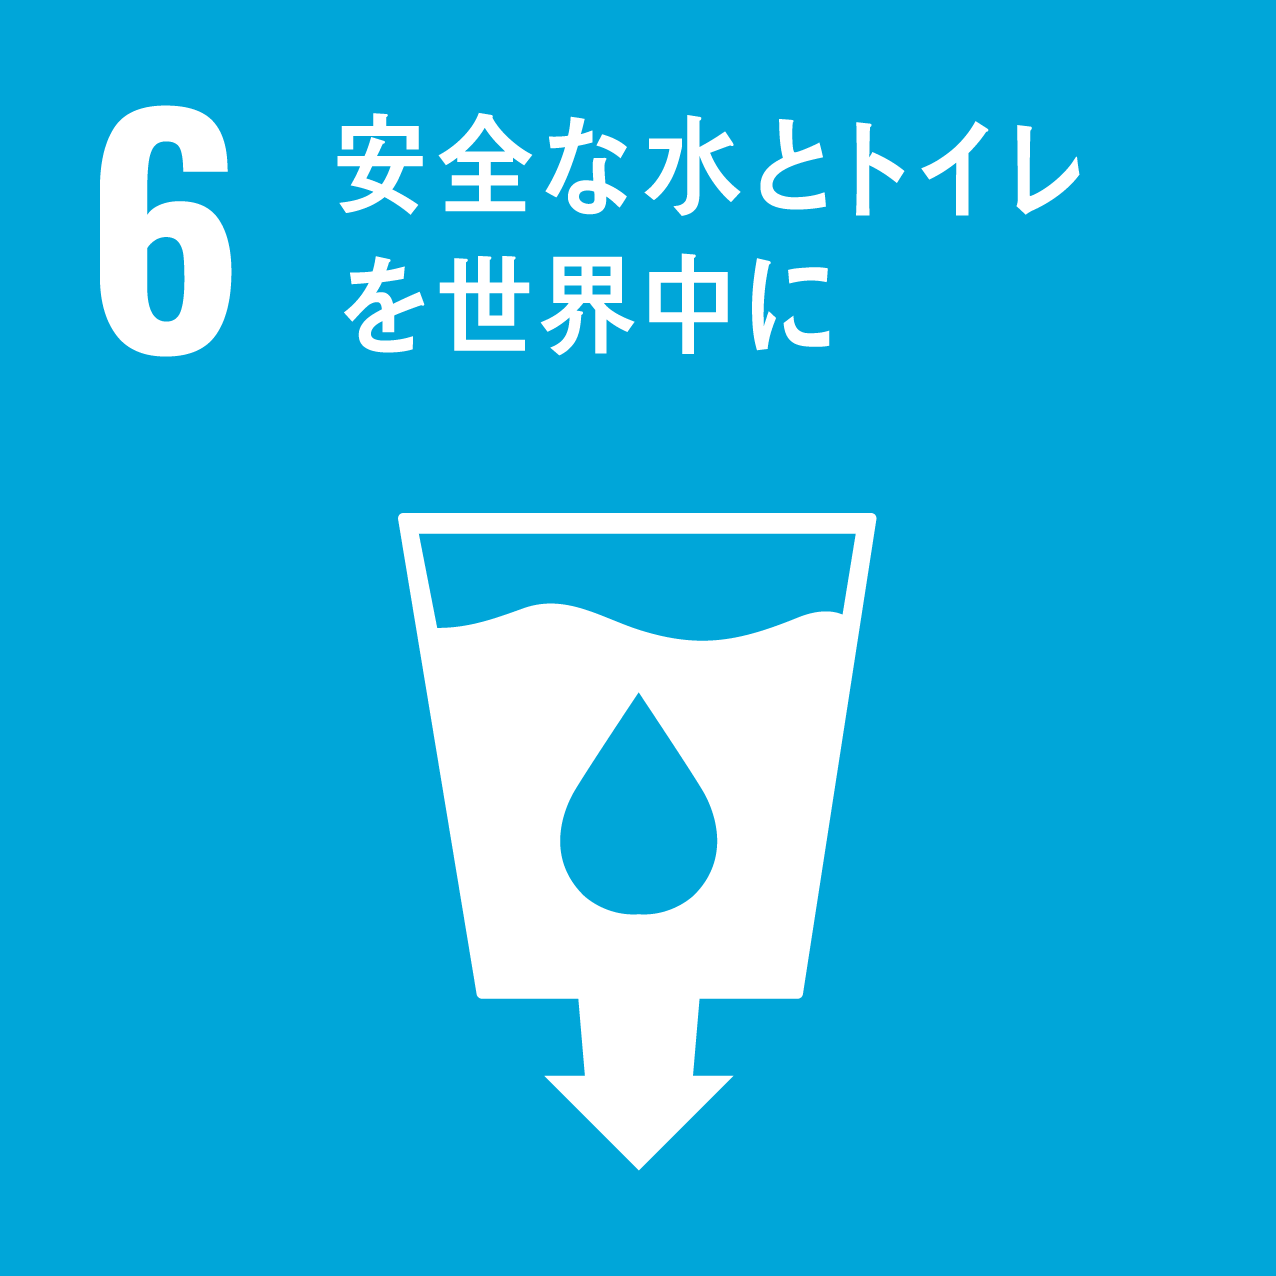 目標 6 : 安全な水とトイレを世界中に